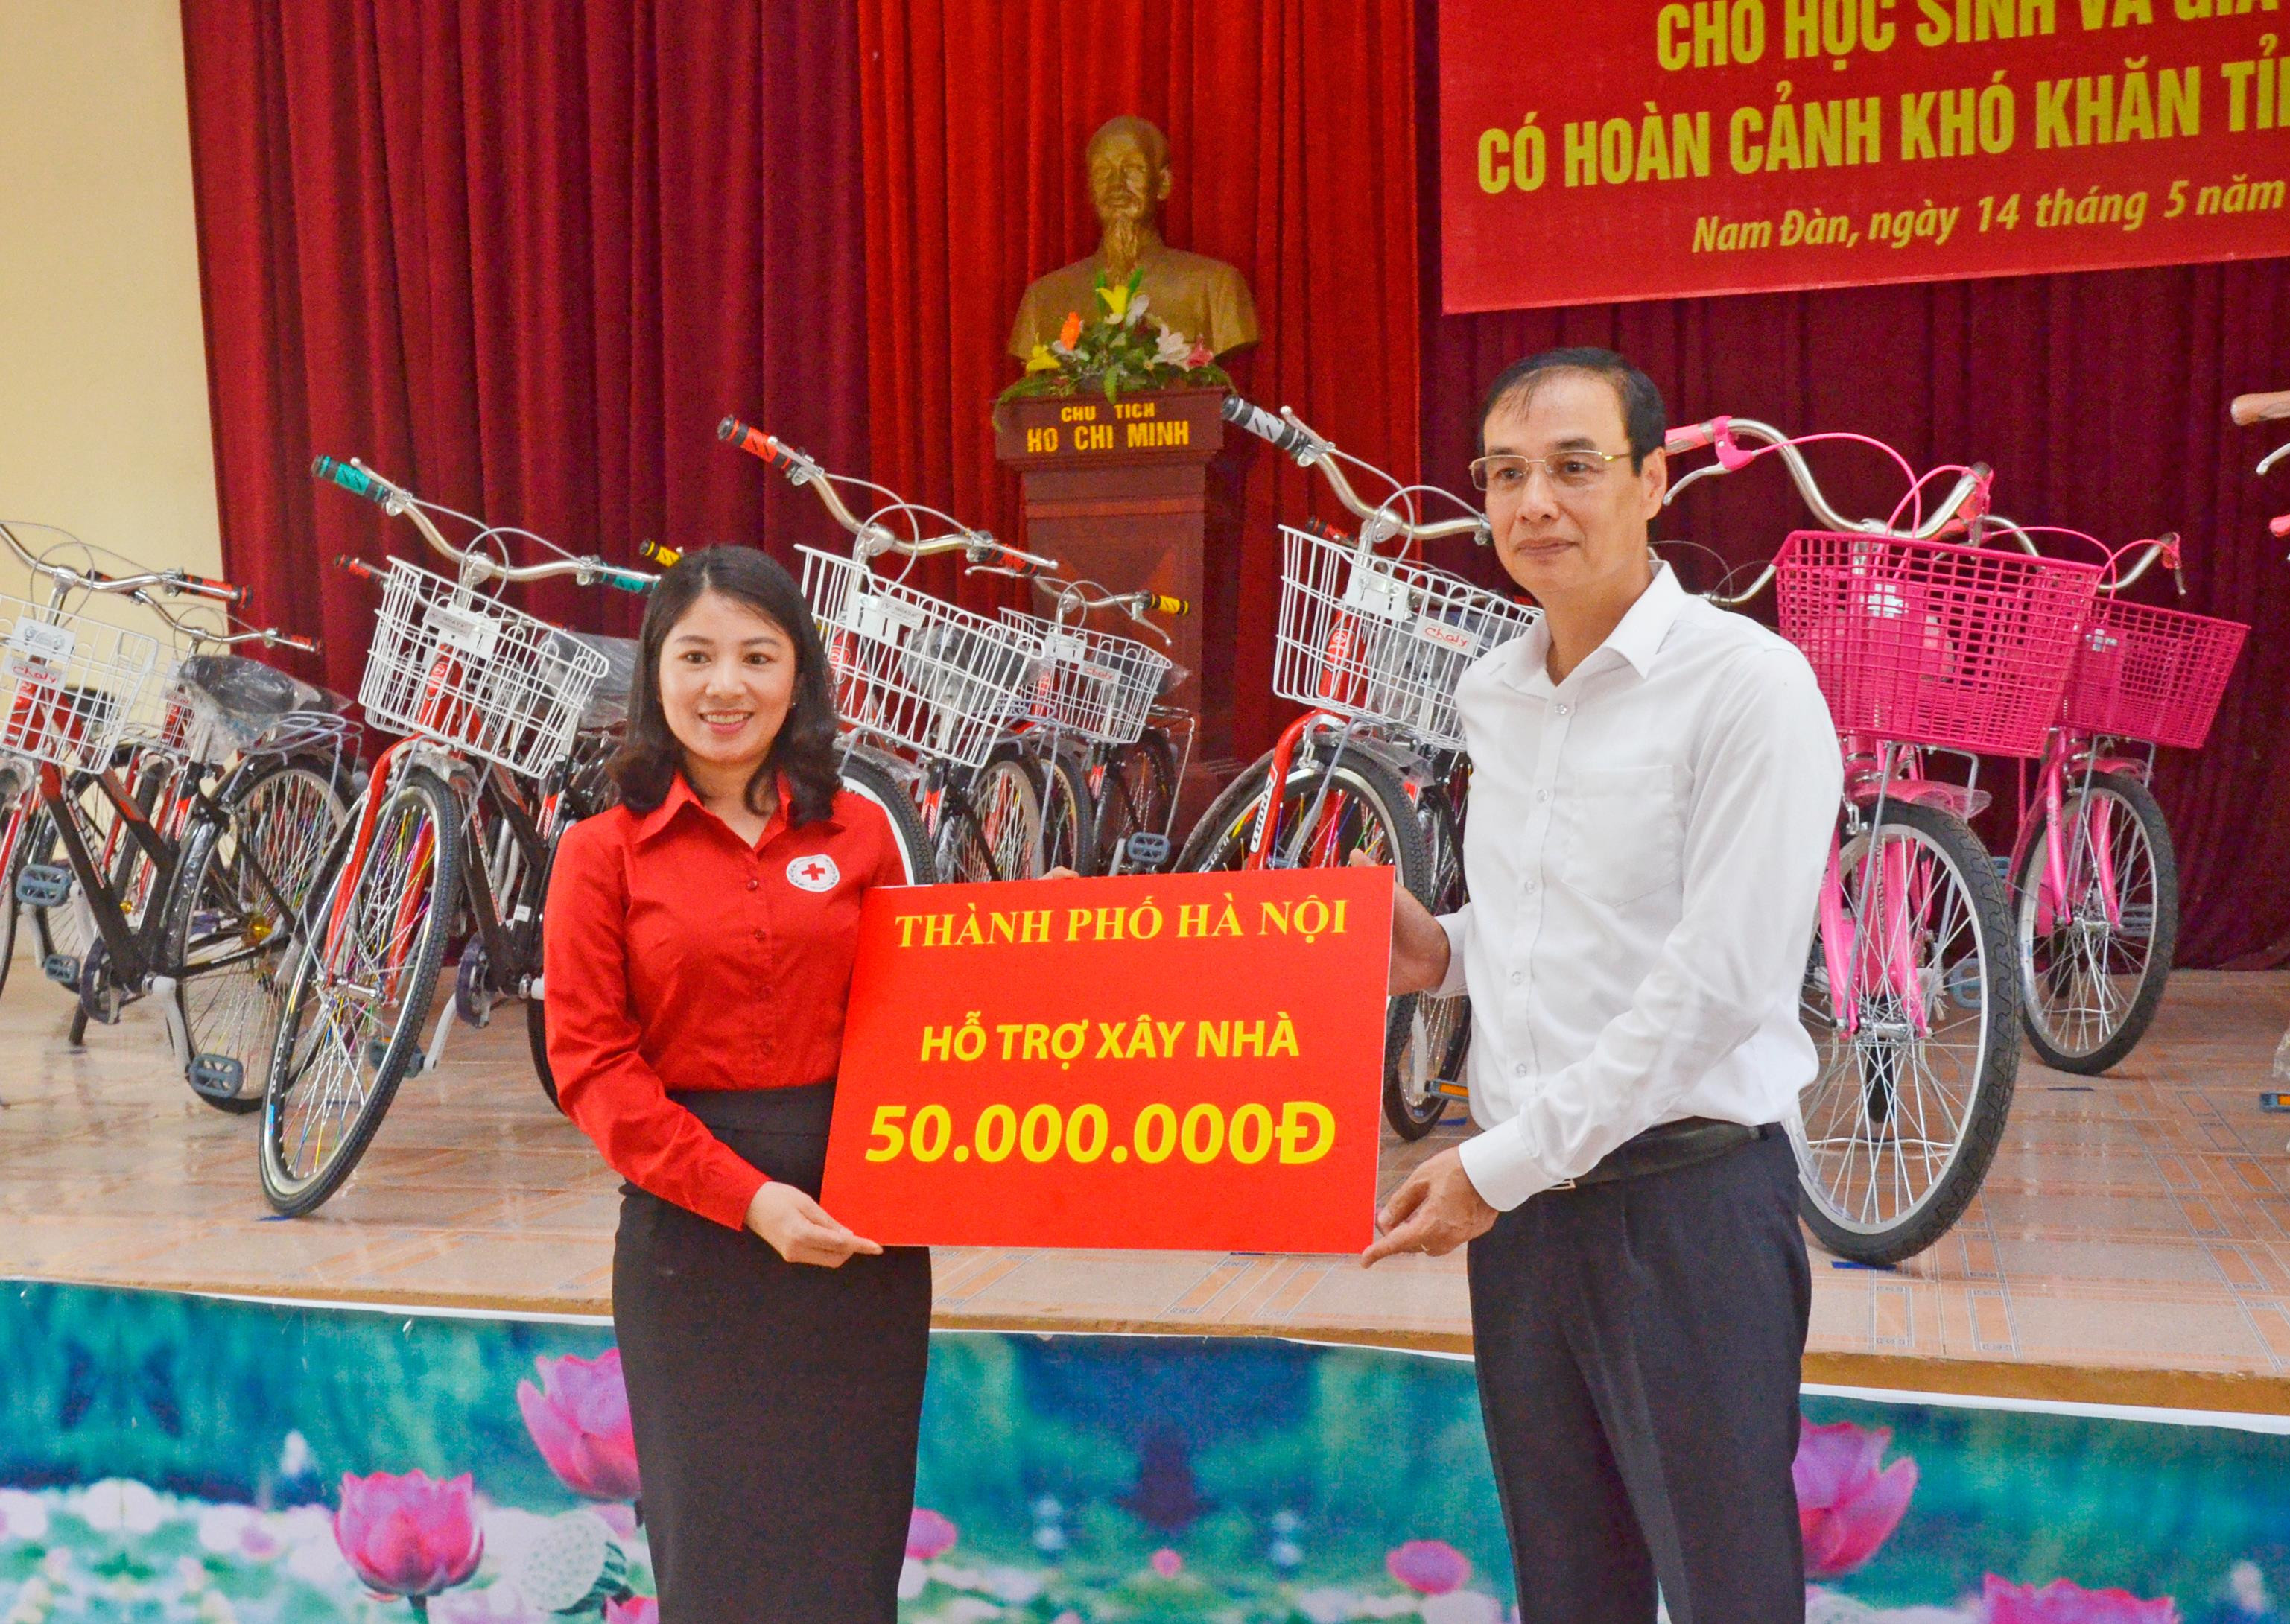 Thông qua Hôi chữ thập đỏ tỉnh, thành phố Hà Nội trao tăng 50 triệu đồng hỗ trợ gia đình ông xây nhà. Ảnh: Thanh Lê